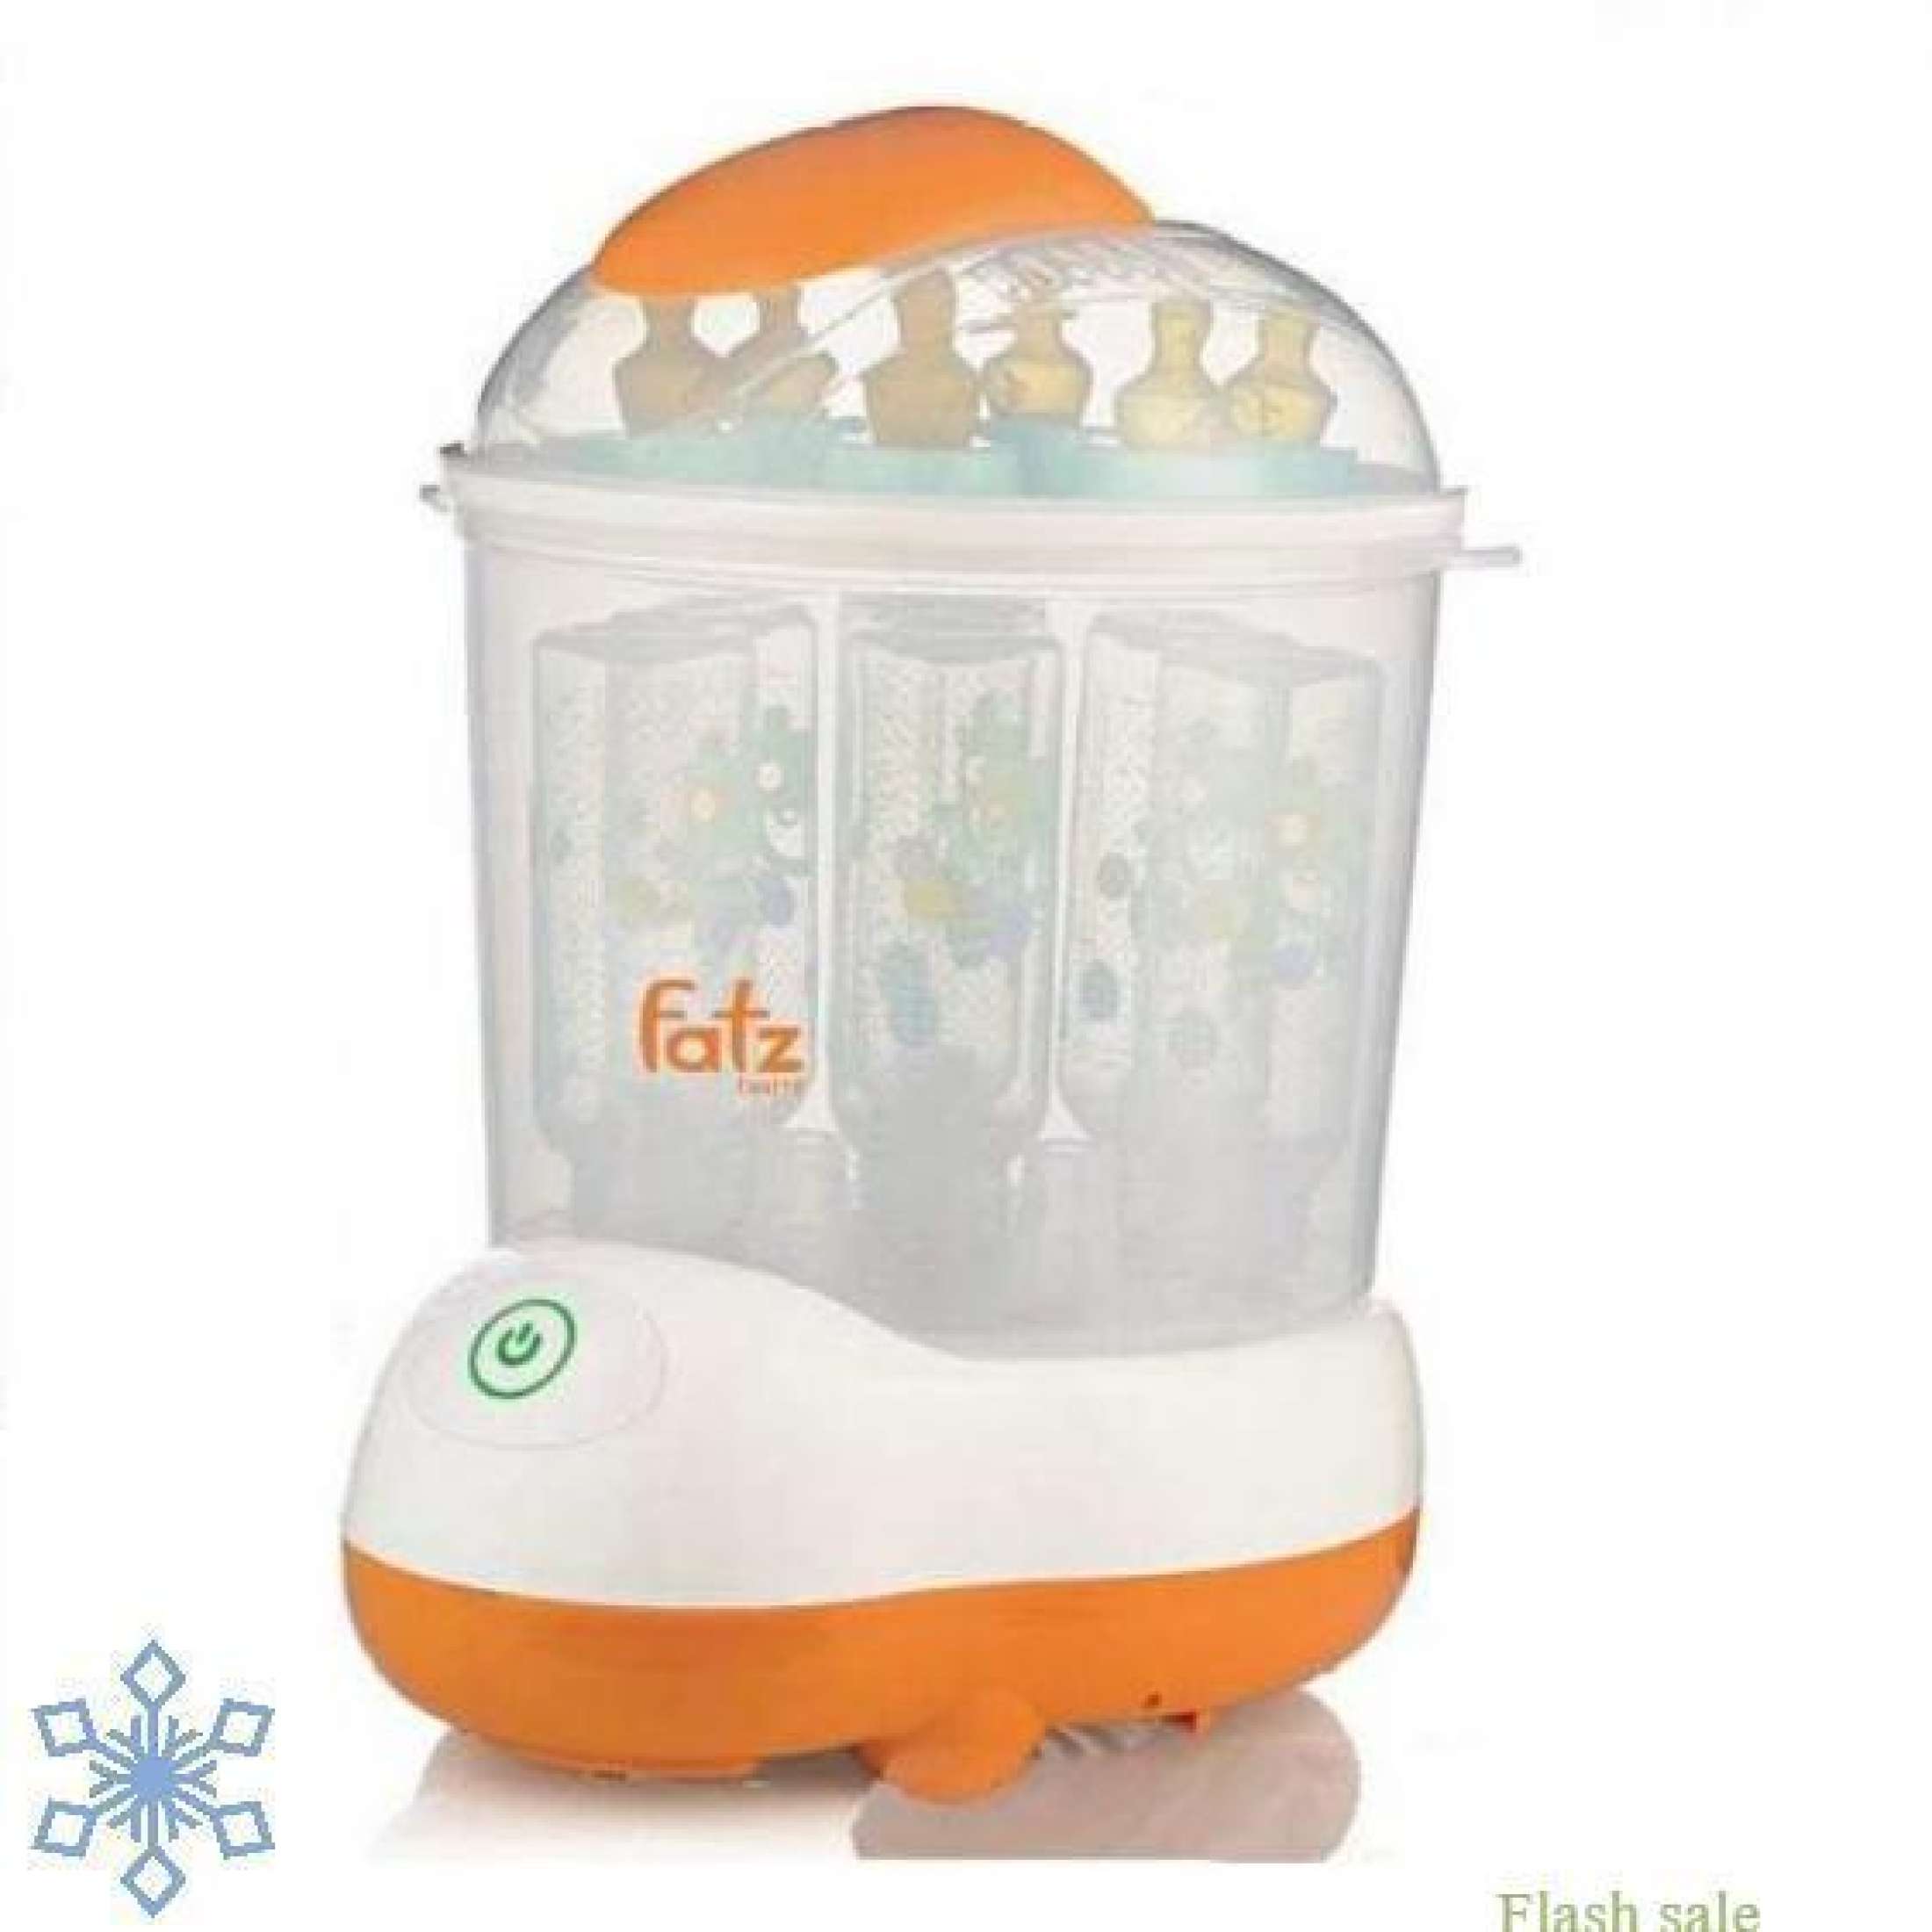 Máy tiệt trùng hơi nước sấy khô Fatz baby FB4906SL không BPA, chứa được 8 bình sữa, có kèm đồ gắp